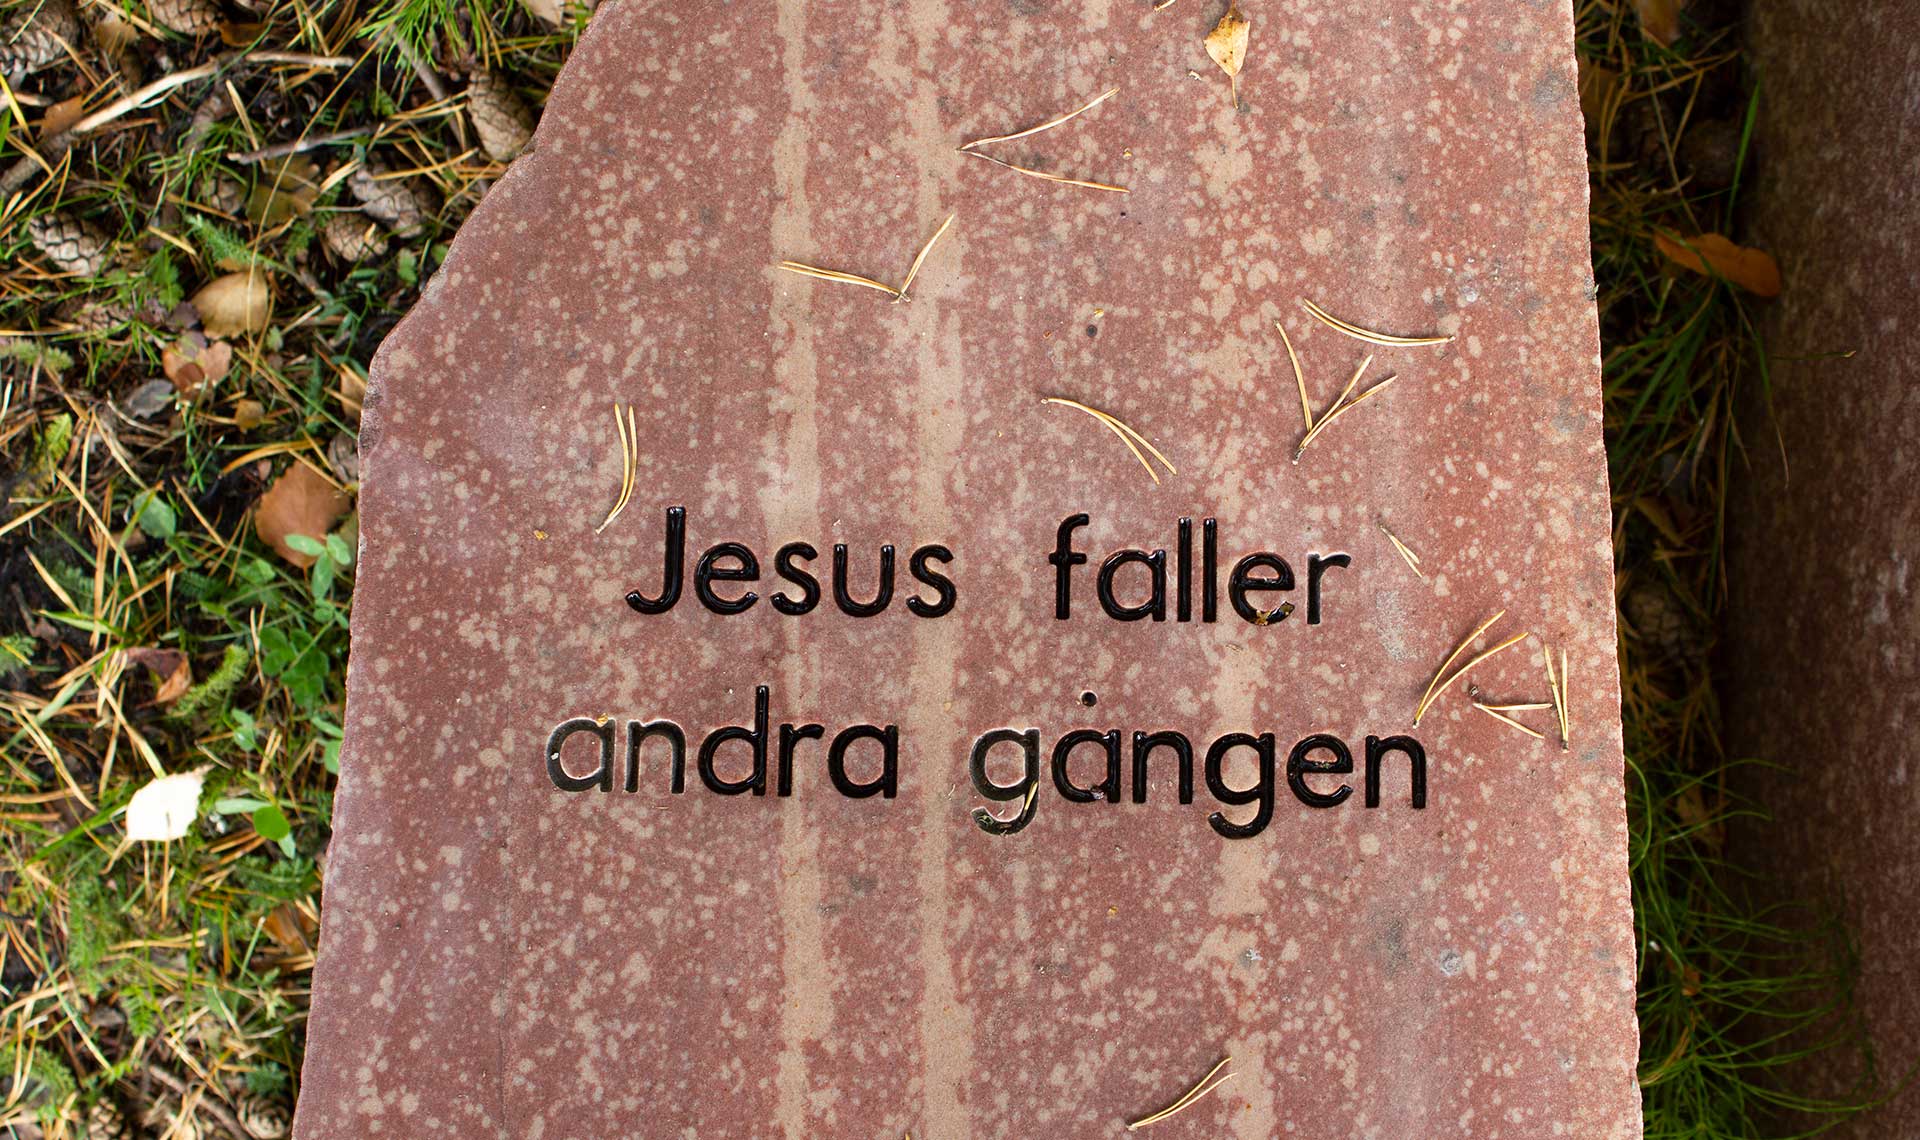 Vias sacra station 7: Jesus faller för andra gången